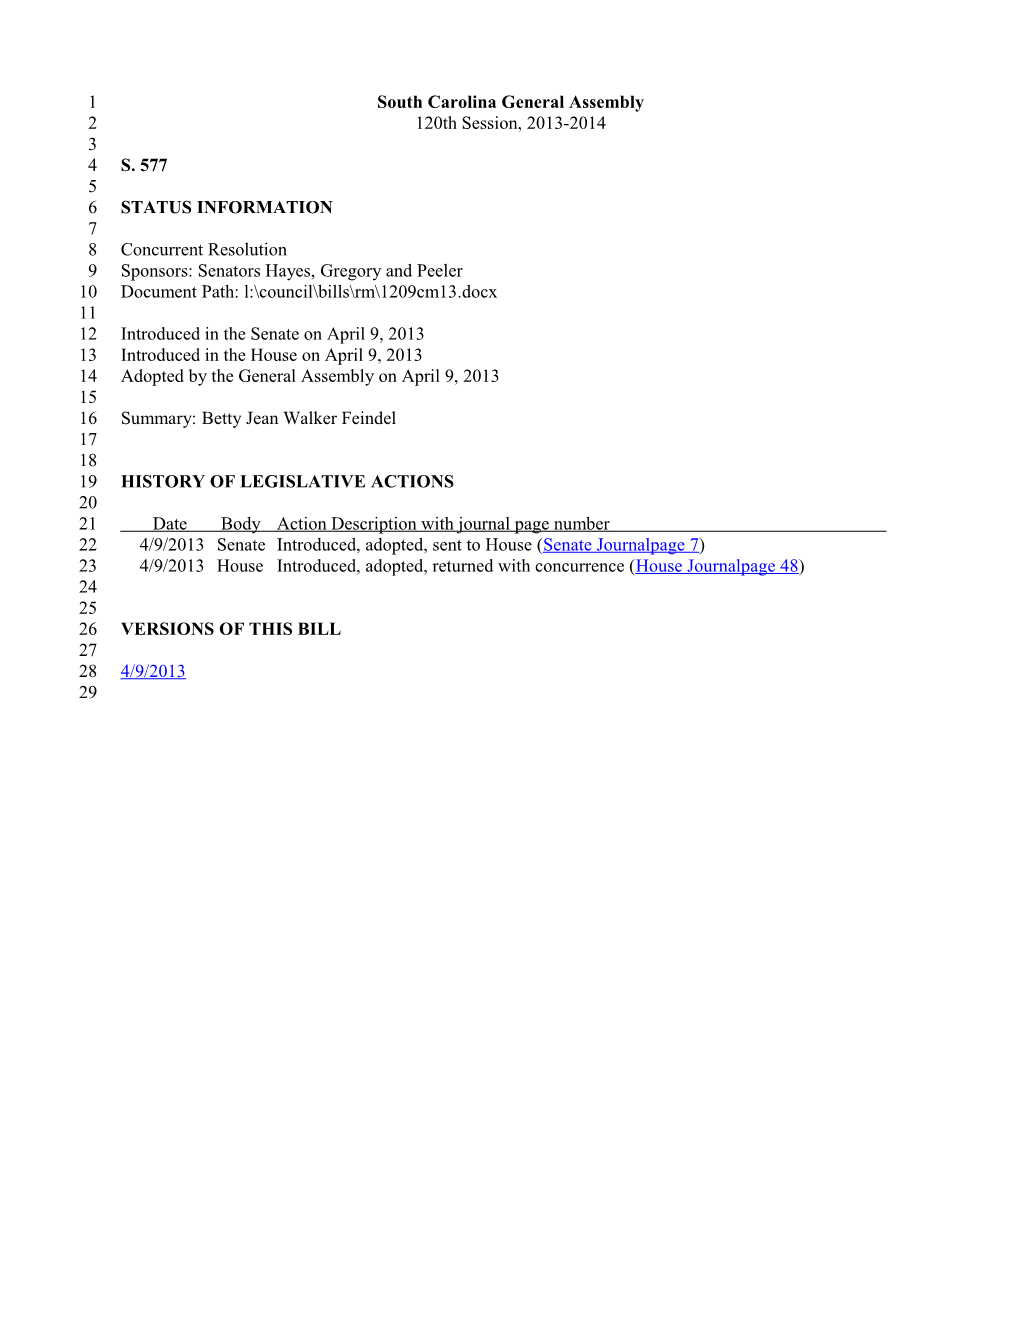 2013-2014 Bill 577: Betty Jean Walker Feindel - South Carolina Legislature Online